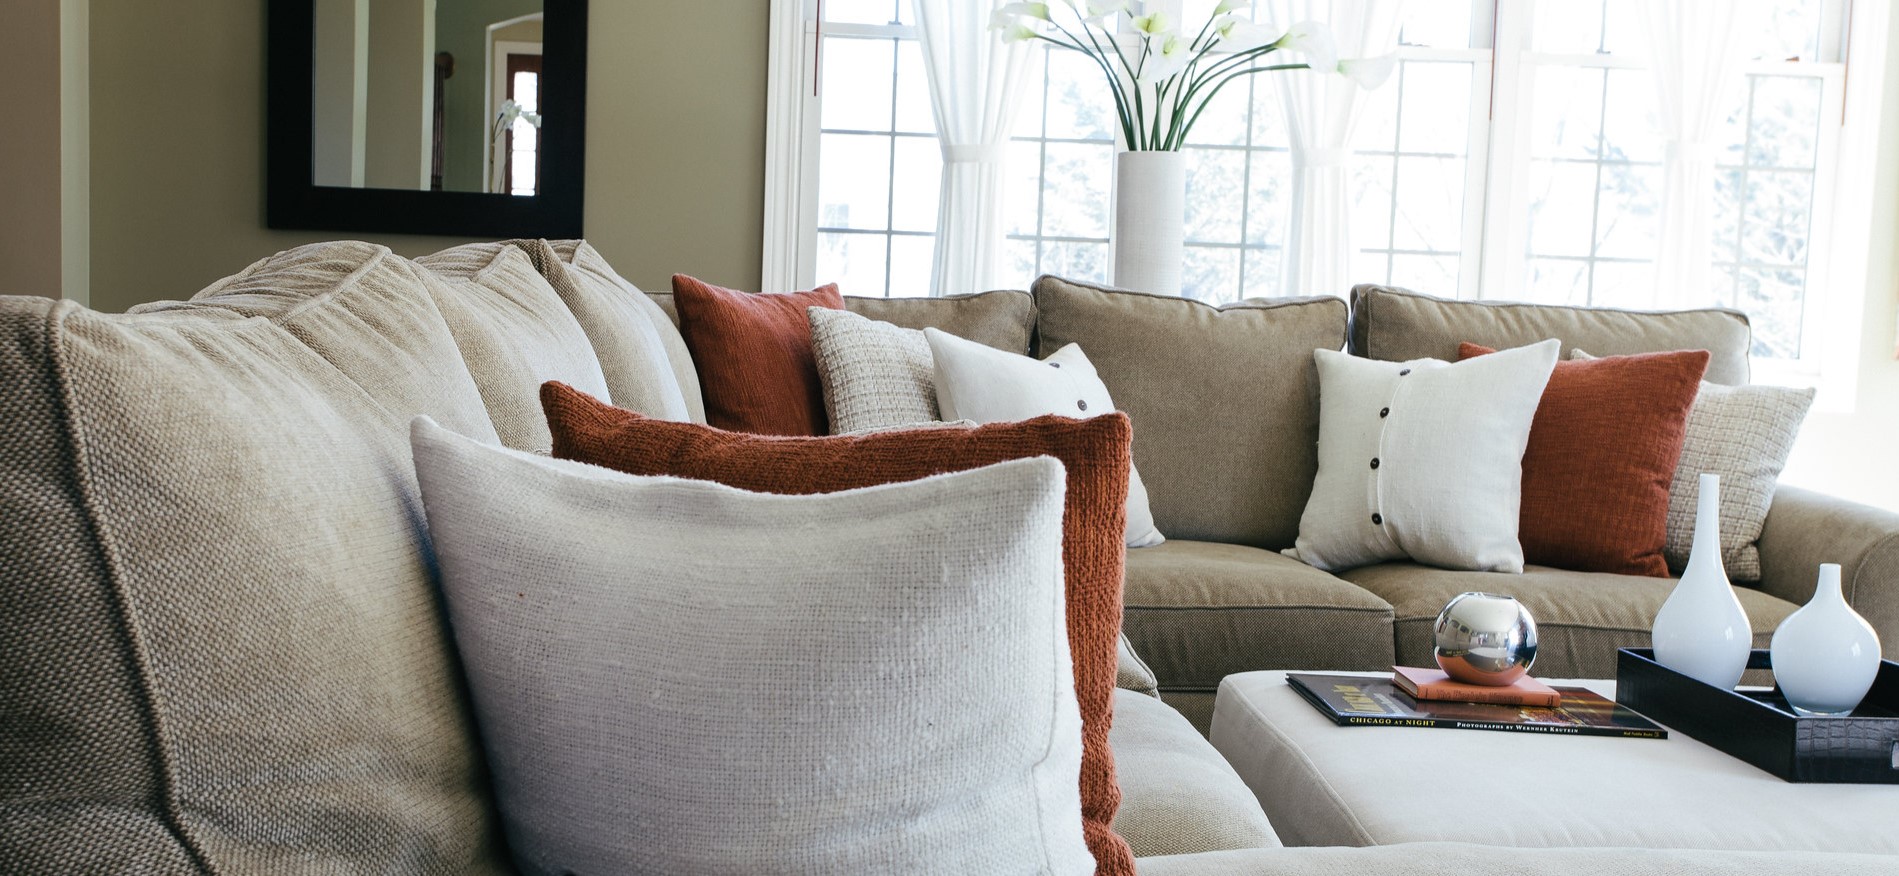 Бежевый диван является универсальным решением для современного интерьера